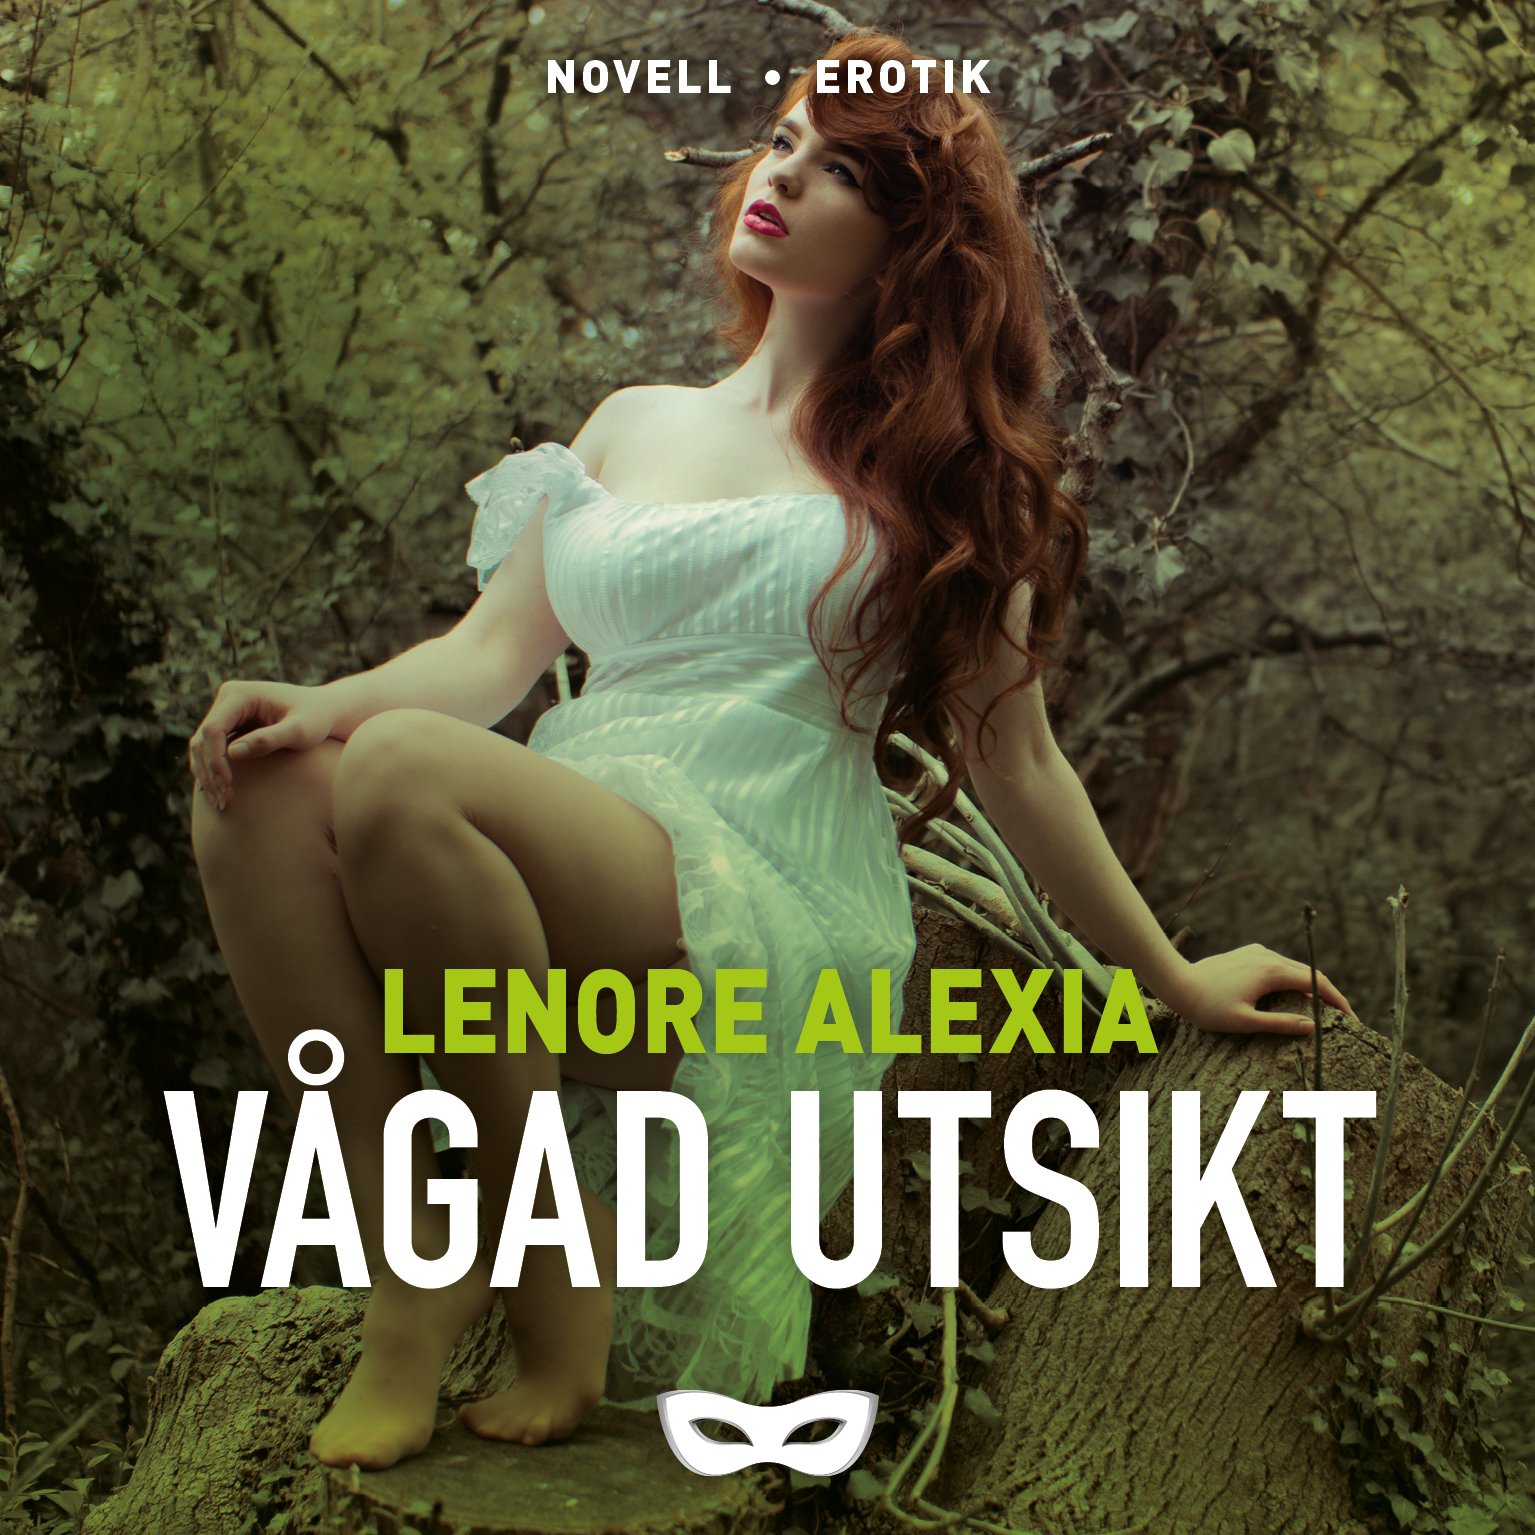 LENO2 Lenore Alexia Våga utsikt omslag audio.jpg